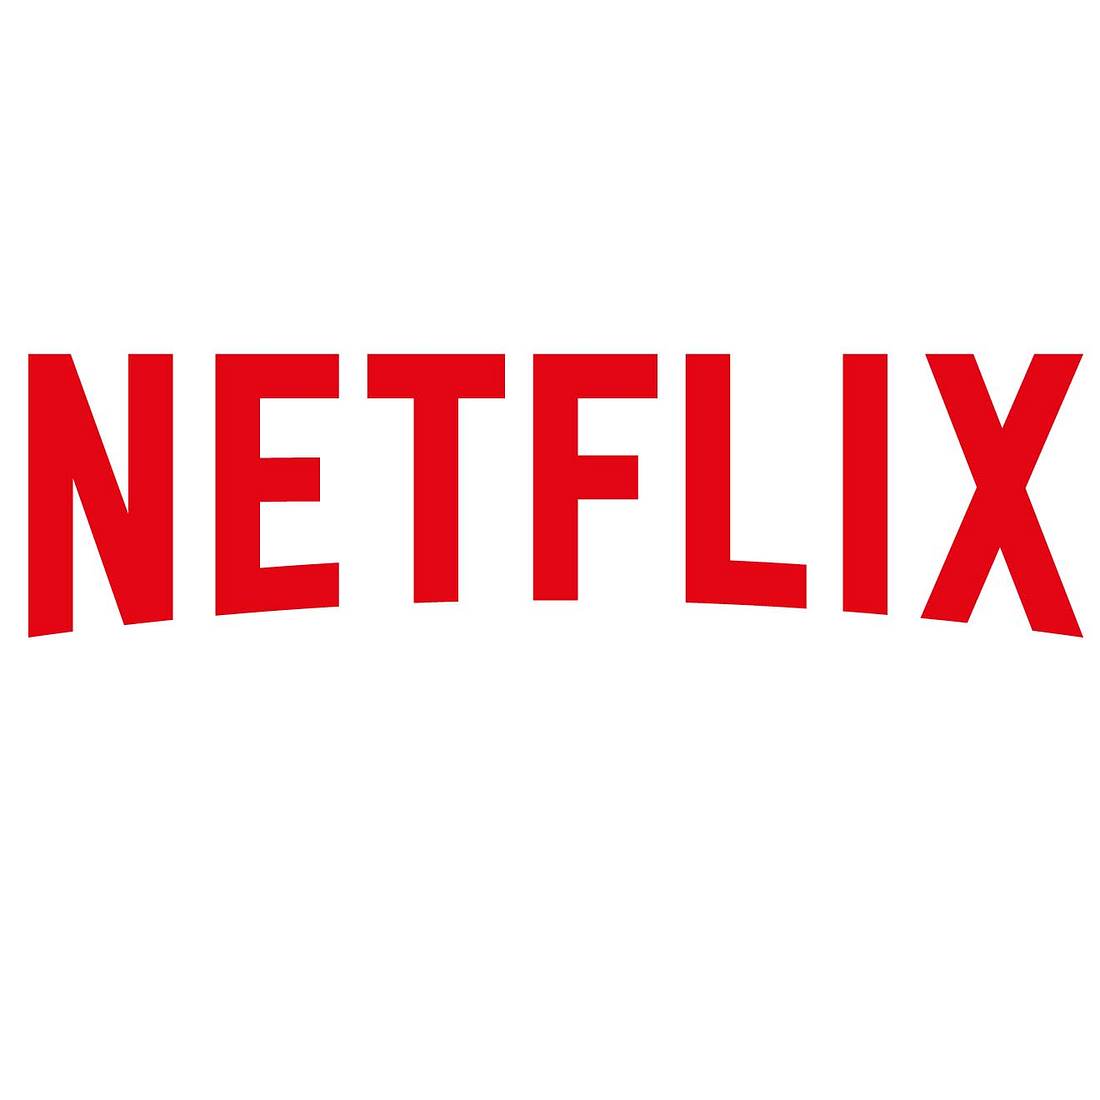 Netflix hat Millionen Nutzer, bald werden allerdings einige Titel gelöscht.